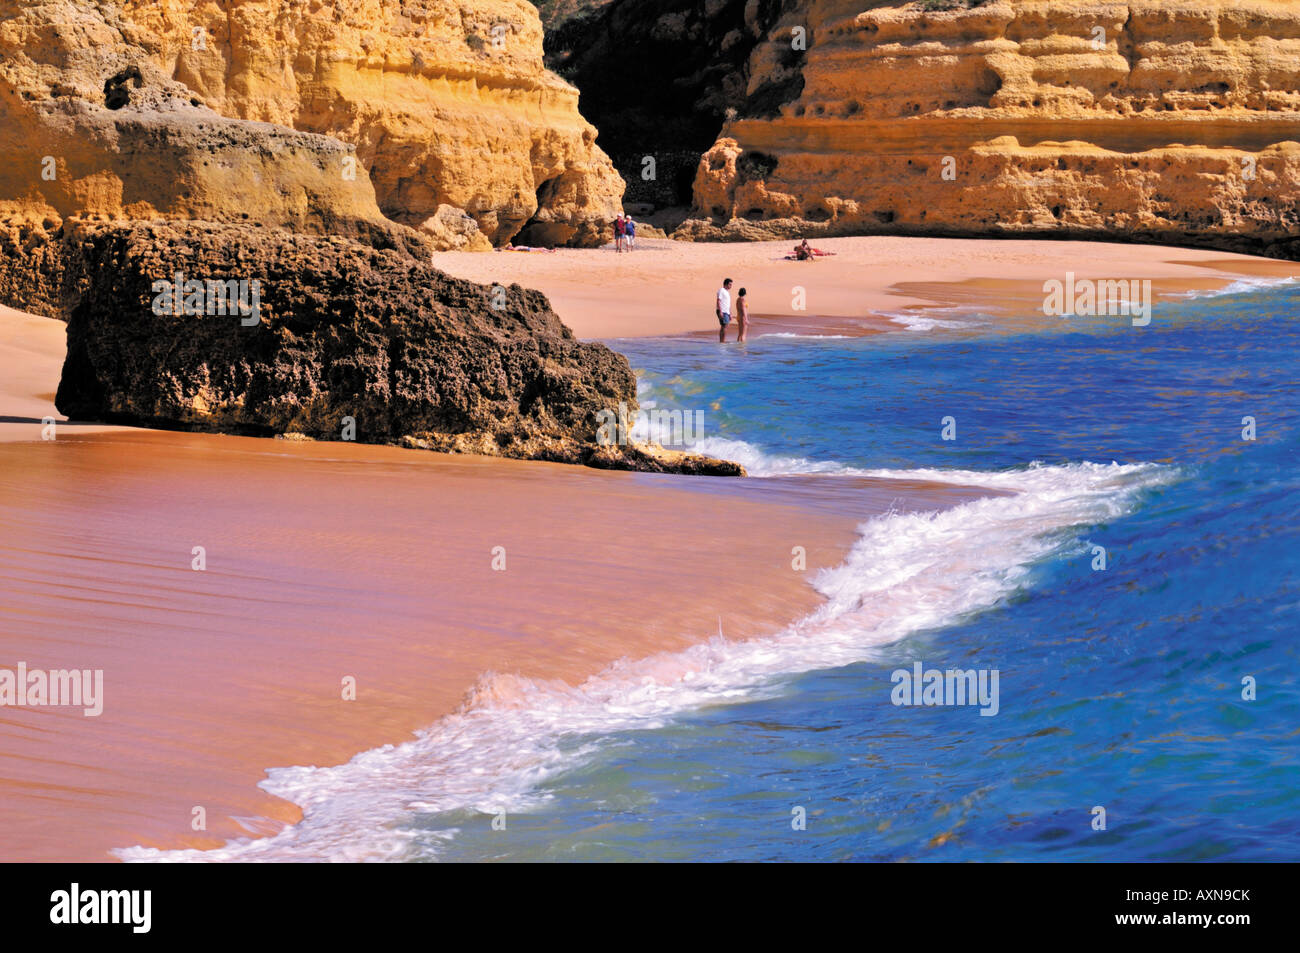 Praia da Marinha, Benagil, Carvoeiro, Algarve, Portugal Banque D'Images